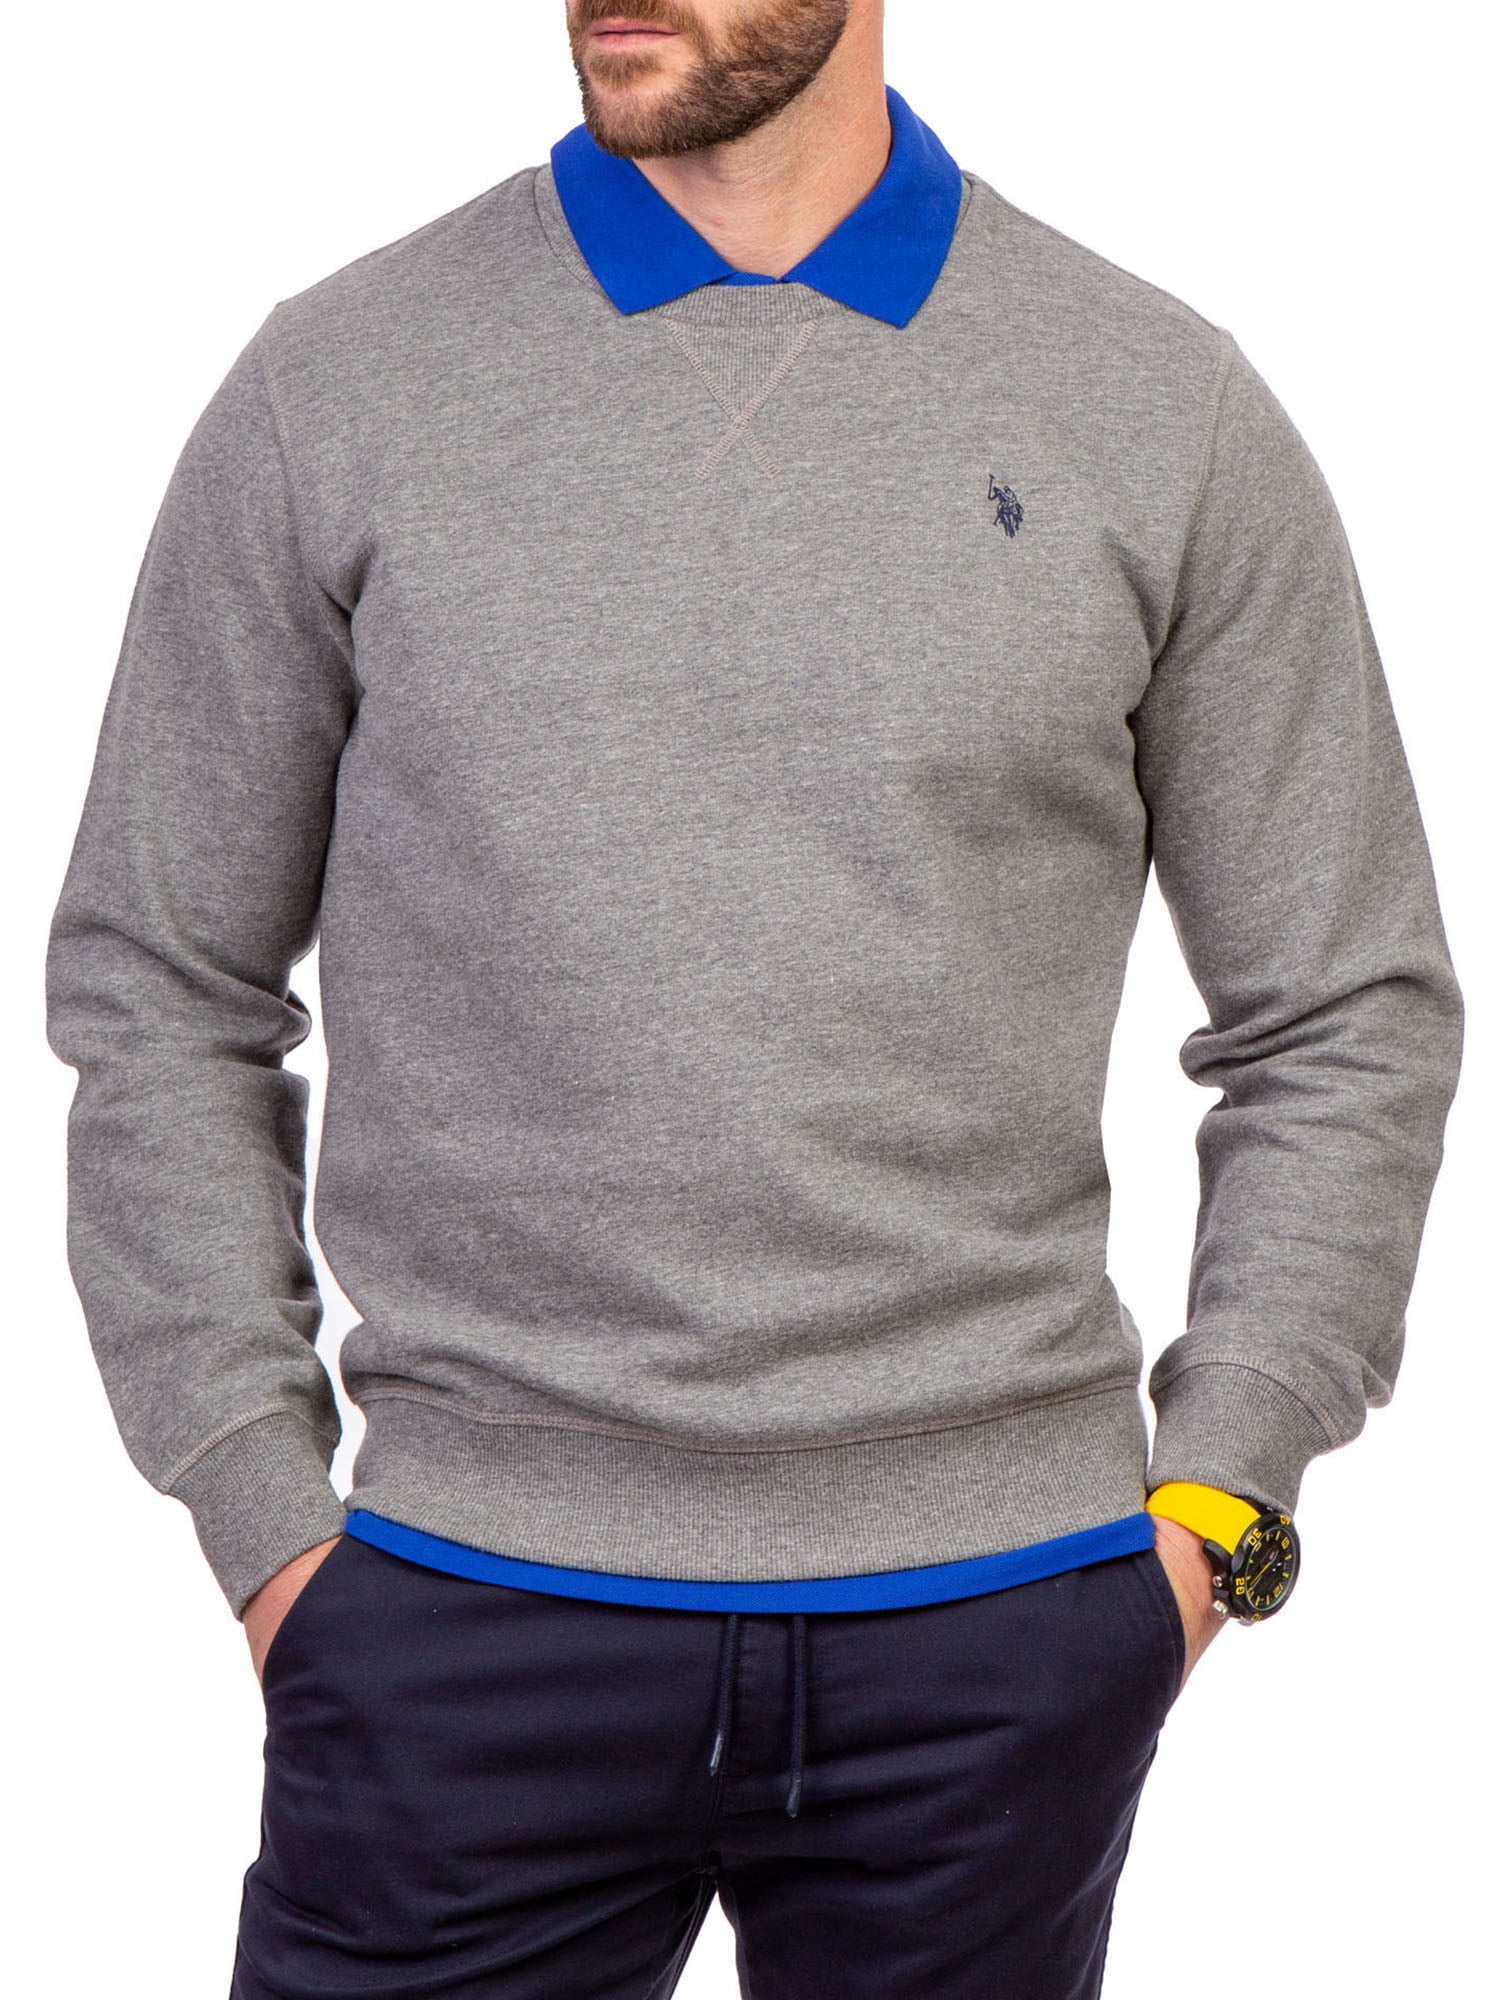 U.S. Assn. Men's Knit Sweater Shirt - Walmart.com